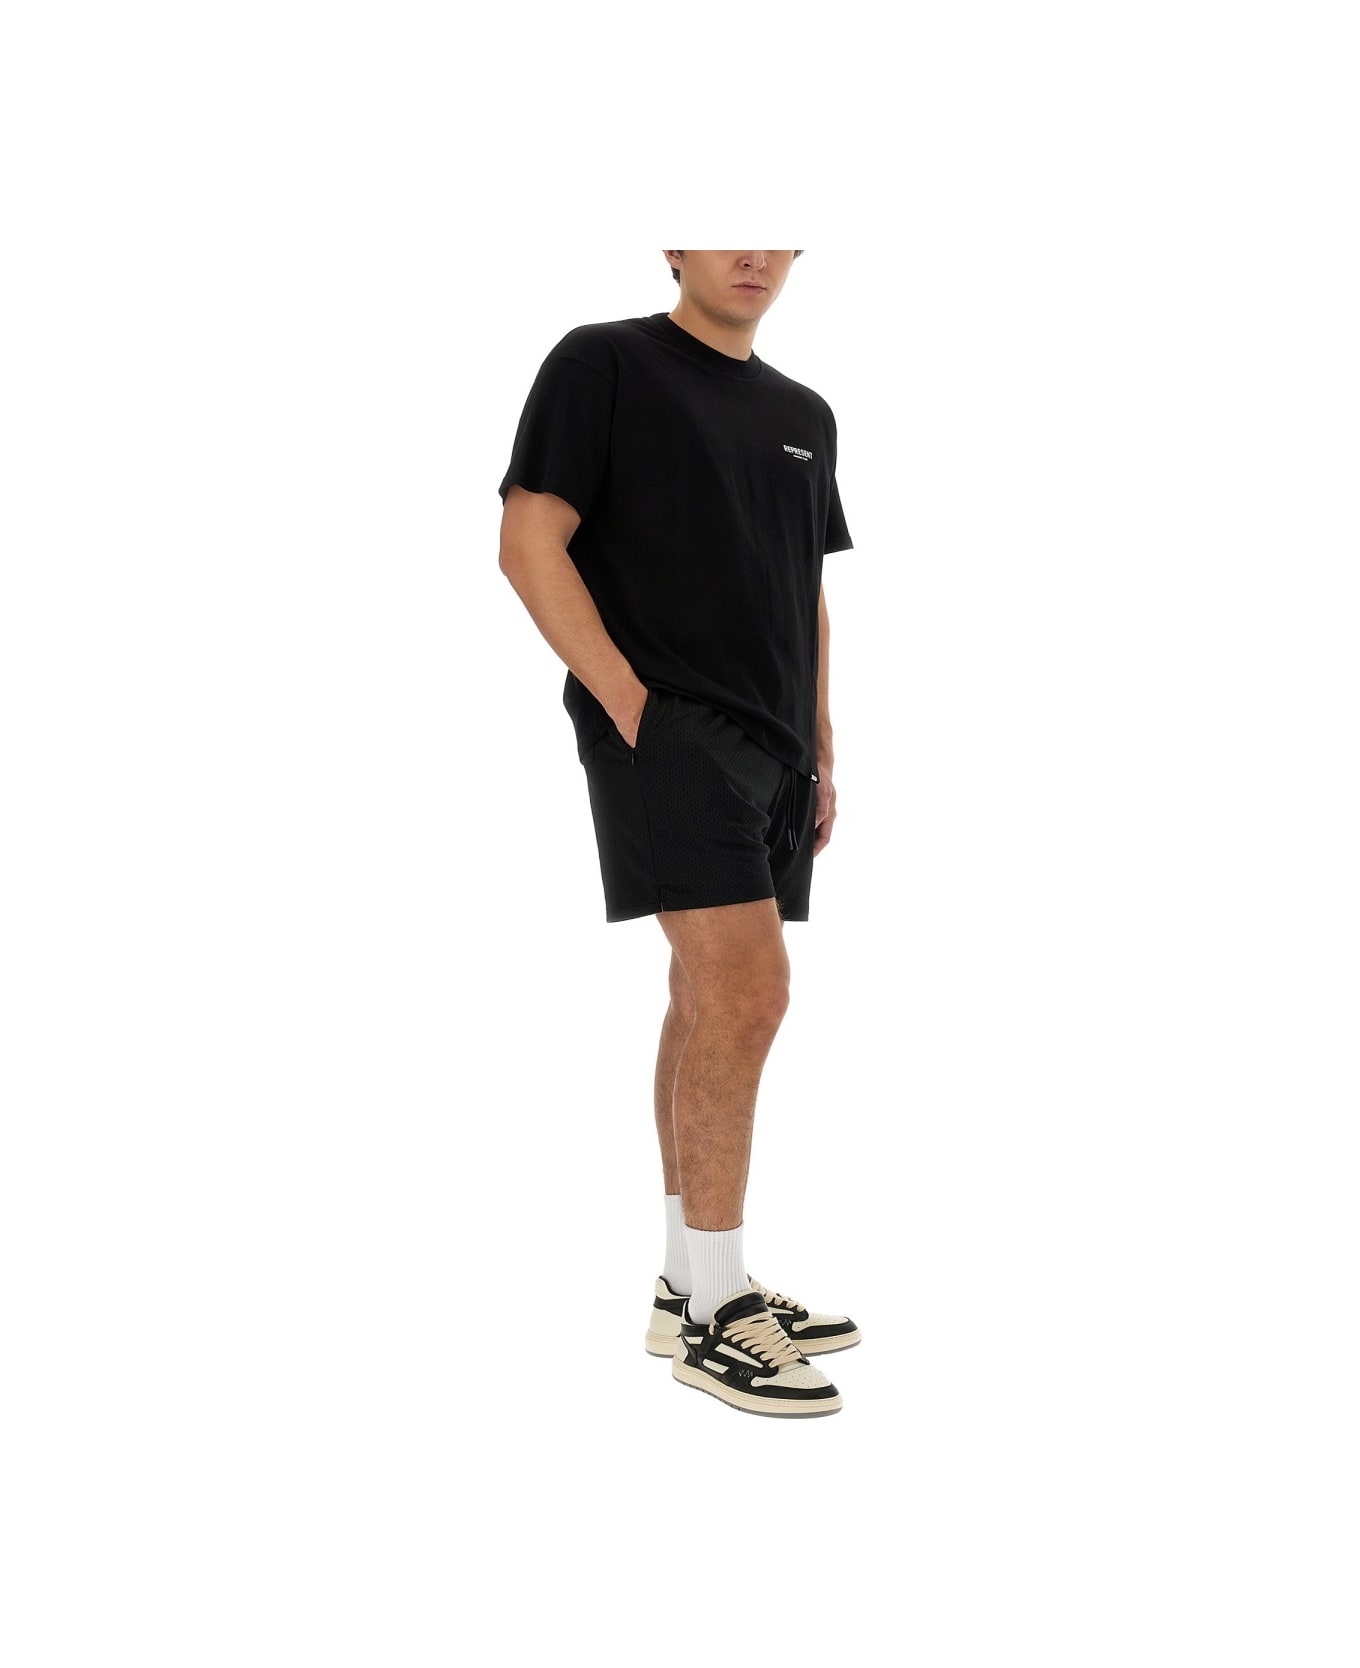 REPRESENT Mesh Bermuda Shorts - BLACK